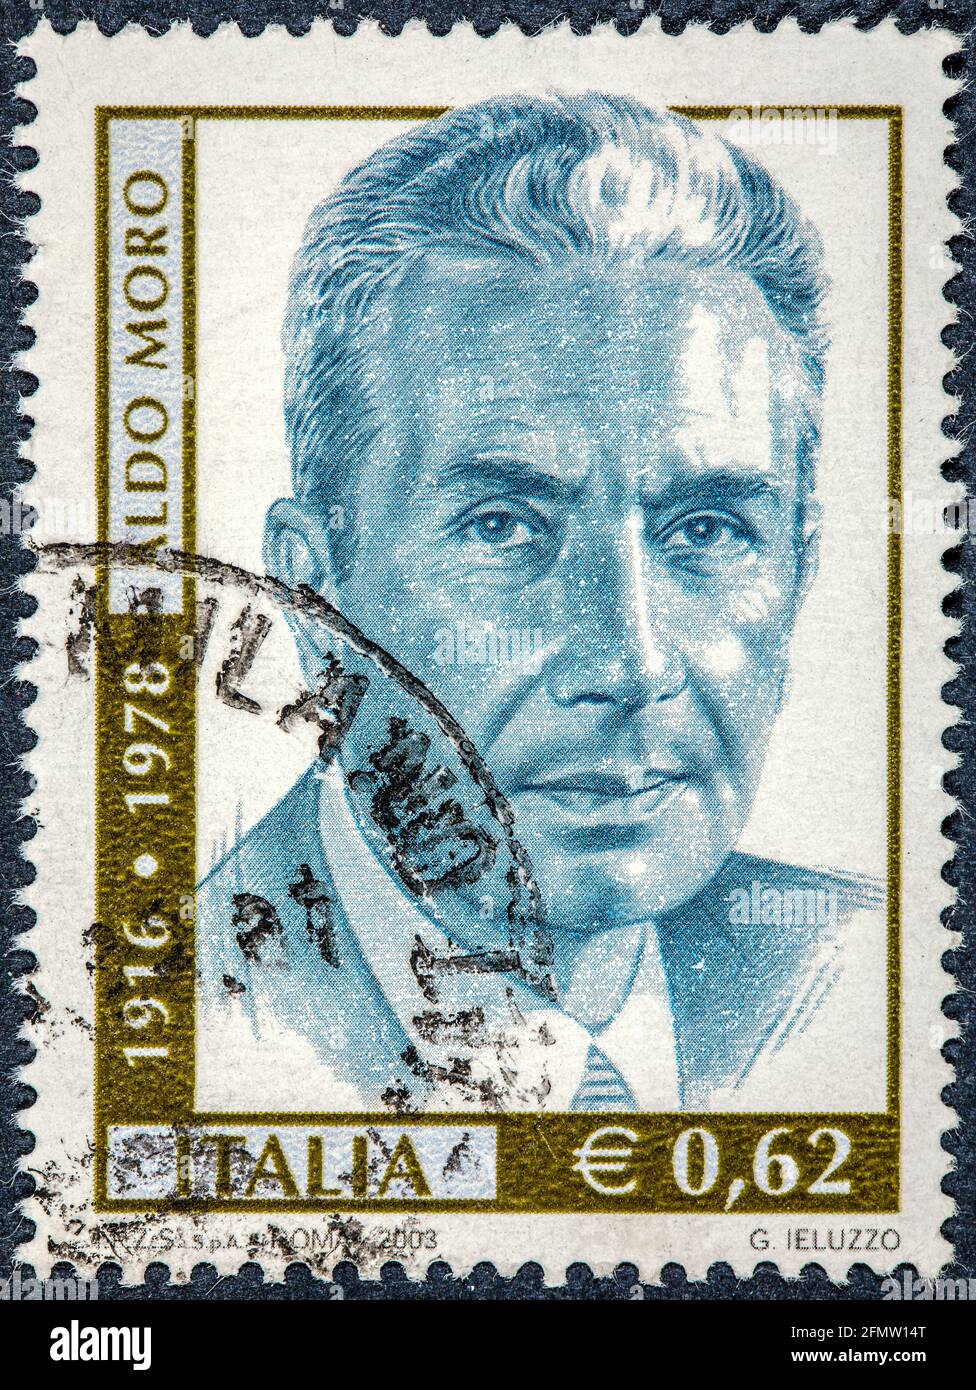 ITALIEN - UM 2003: Die von Italien gedruckte Briefmarke zeigt, dass Aldo Moro zweimal Premierminister seines Landes war Stockfoto